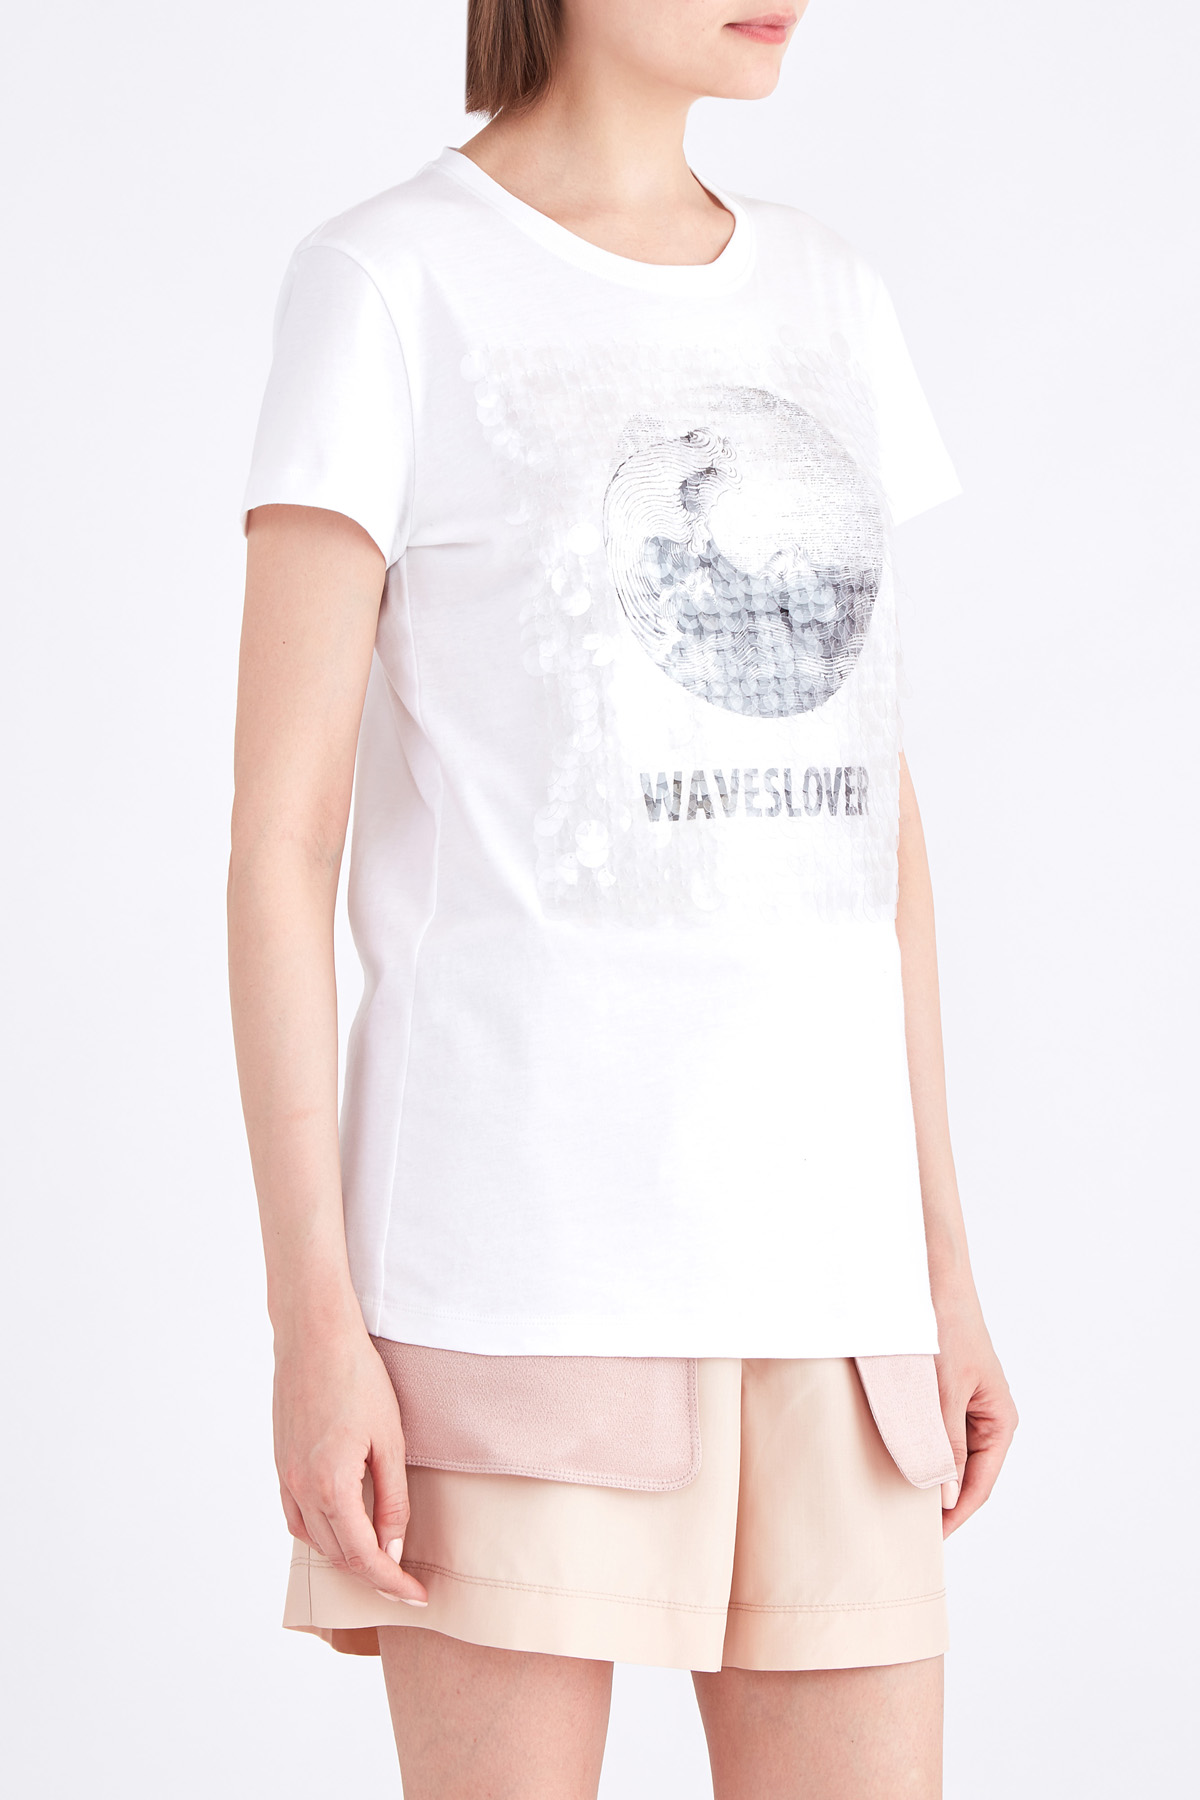 Хлопковая футболка с черно-белой аппликацией и вышивкой пайетками VALENTINO, цвет белый, размер 42;44 - фото 3